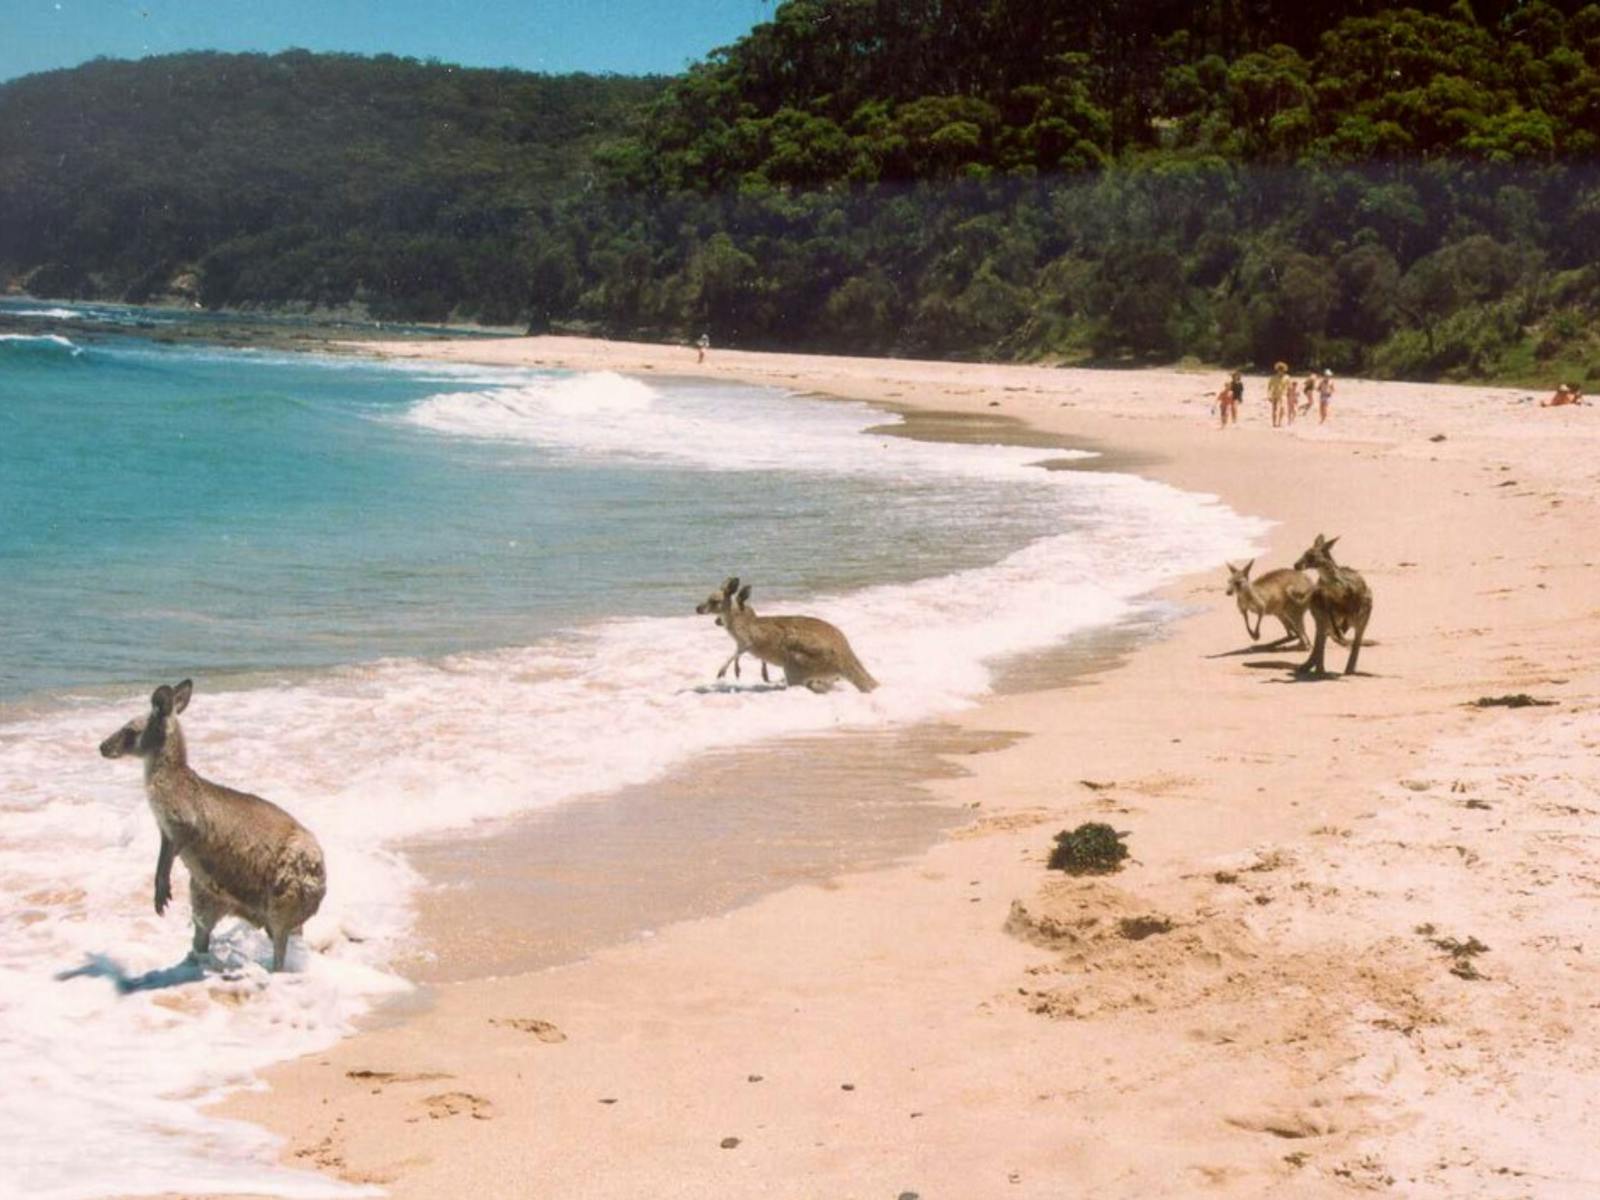 Kangaroos love Kioloa Beach too!